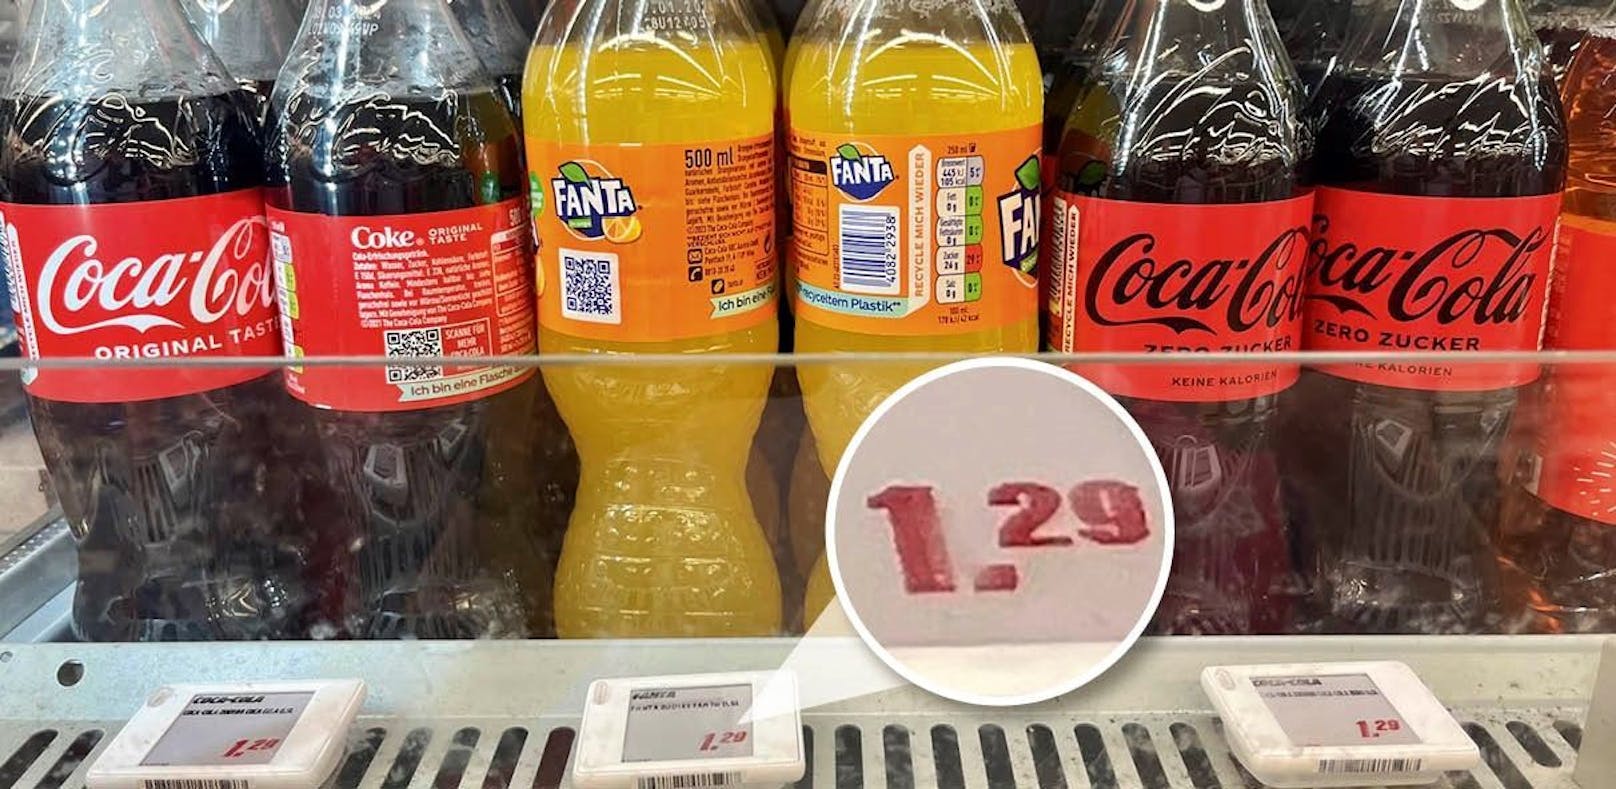 Unglaublich – Cola ist hier günstiger als im Supermarkt